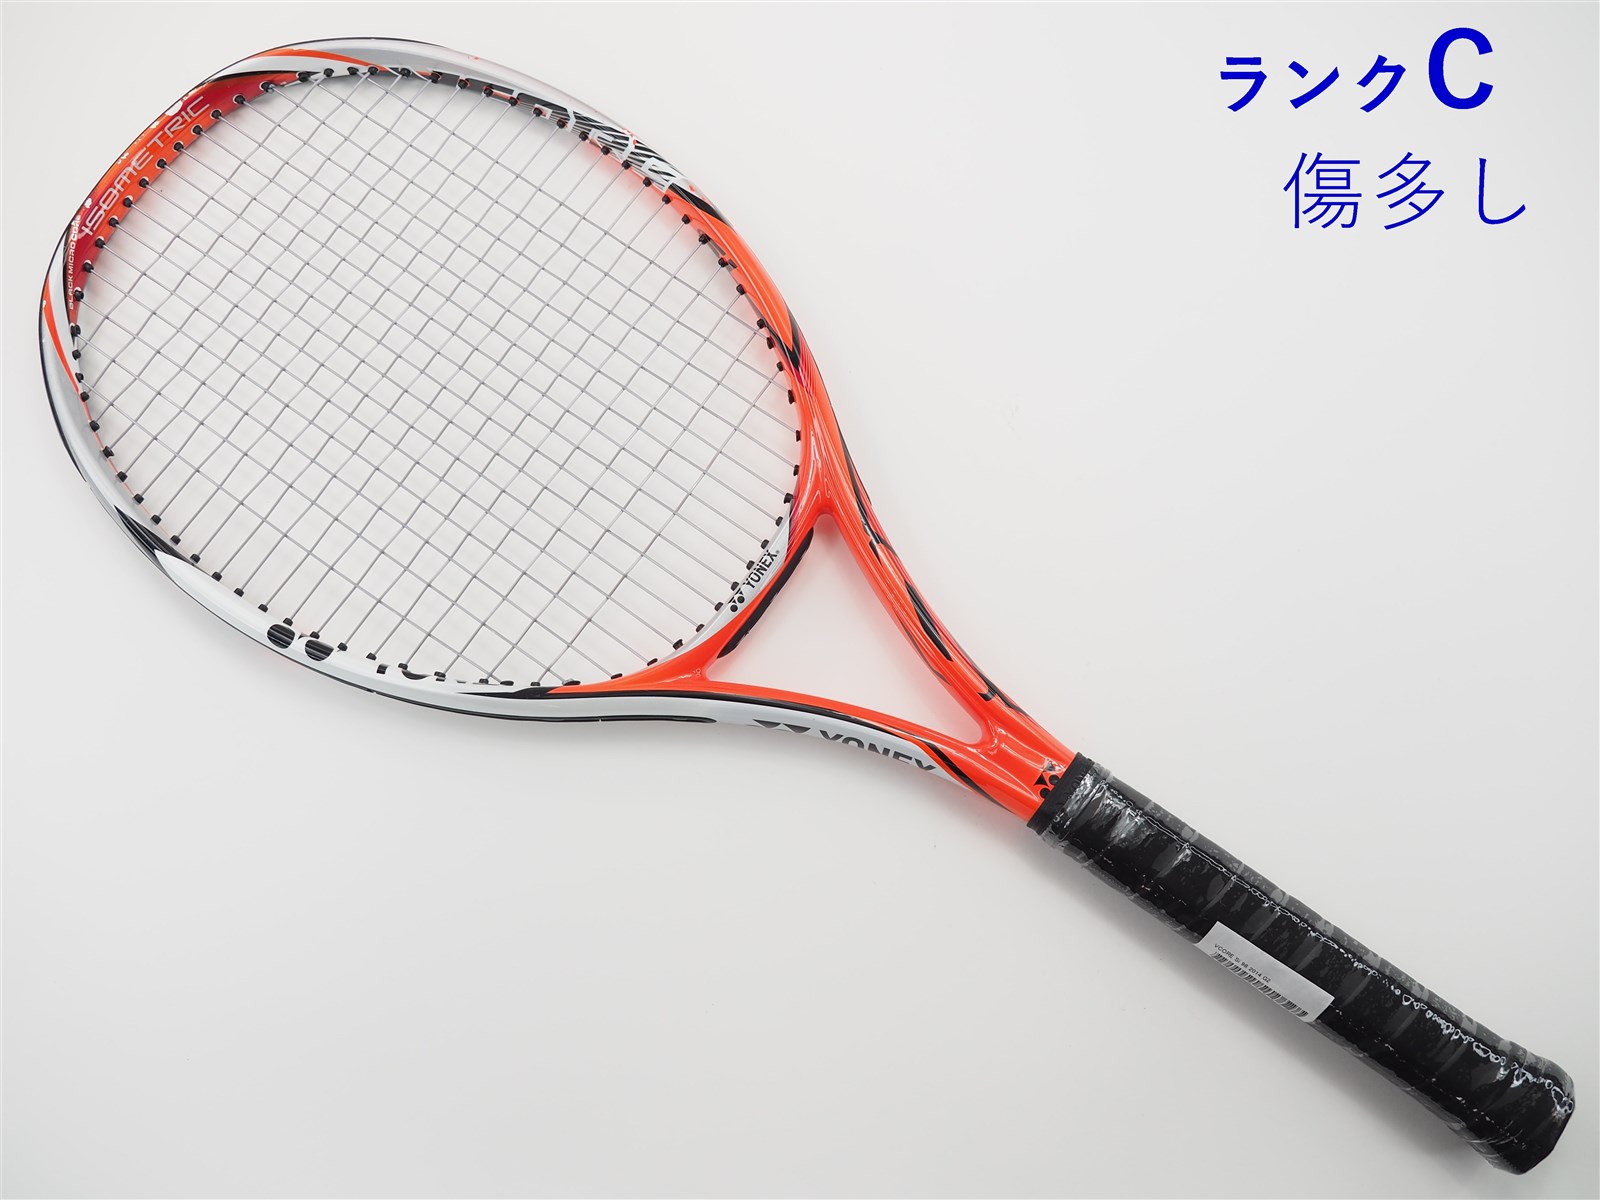 グレイ系【新発売】YONEX ヨネックス Vcore98 ブイコア98 G2 テニスラケット ラケット(硬式用)  スポーツ・レジャーグレイ系￥9,999-ugel03-tno.gob.pe